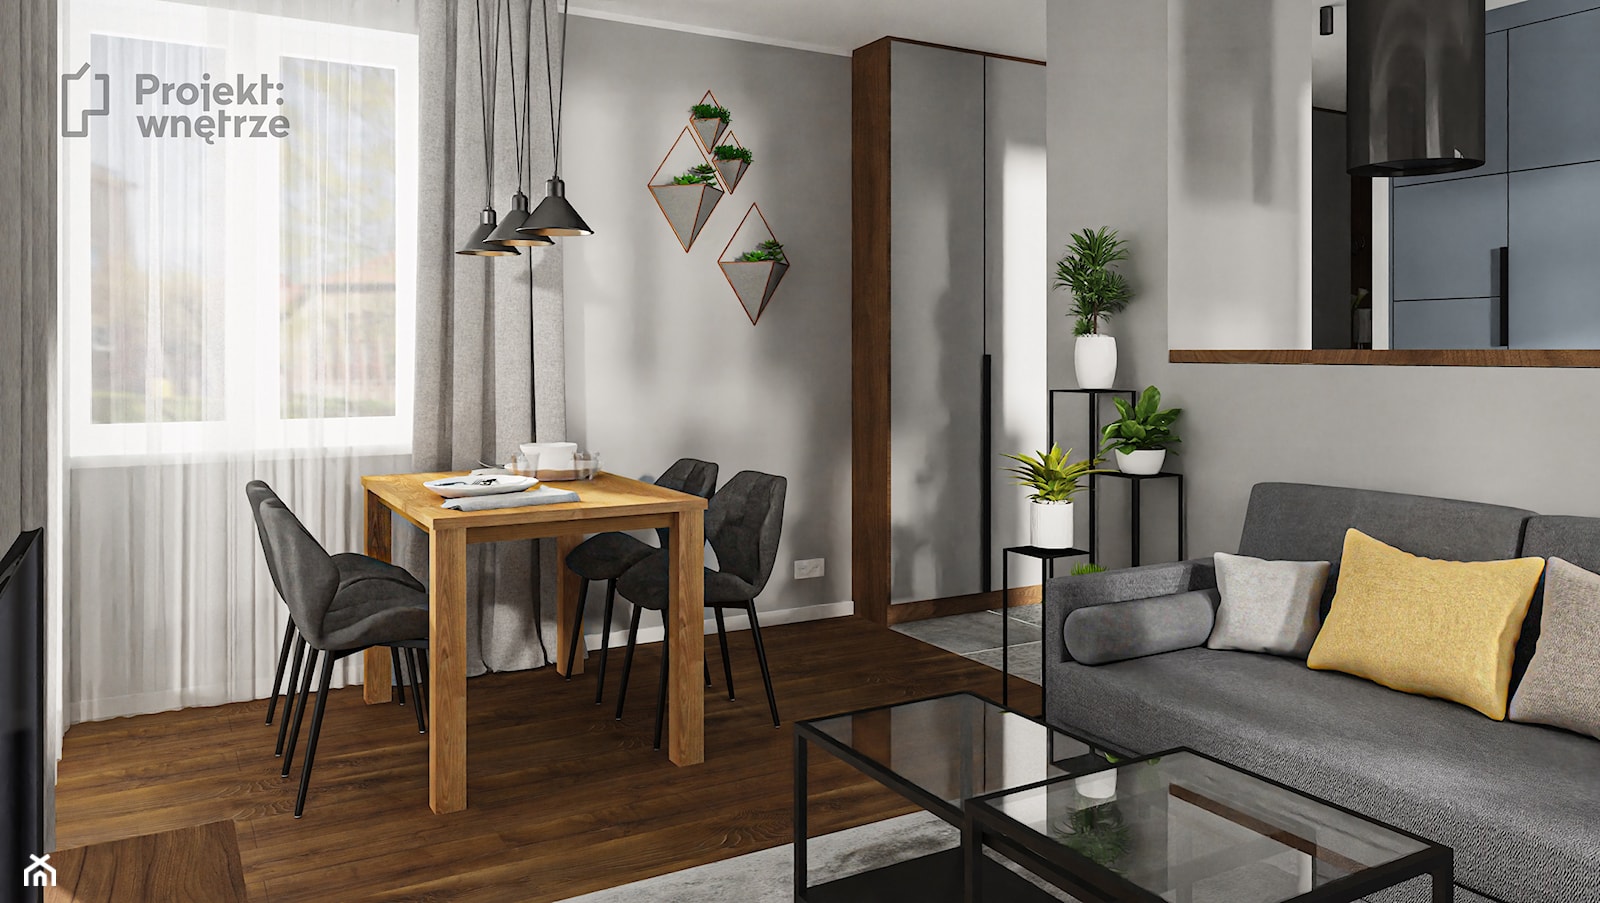 Mały salon z kuchnią jadalnią nowoczesny szary minimalistyczny beton loft ciemne drewno niebieski PROJEKT: WNĘTRZE www.projektwnetrze.com.pl - zdjęcie od PROJEKT: WNĘTRZE - Homebook